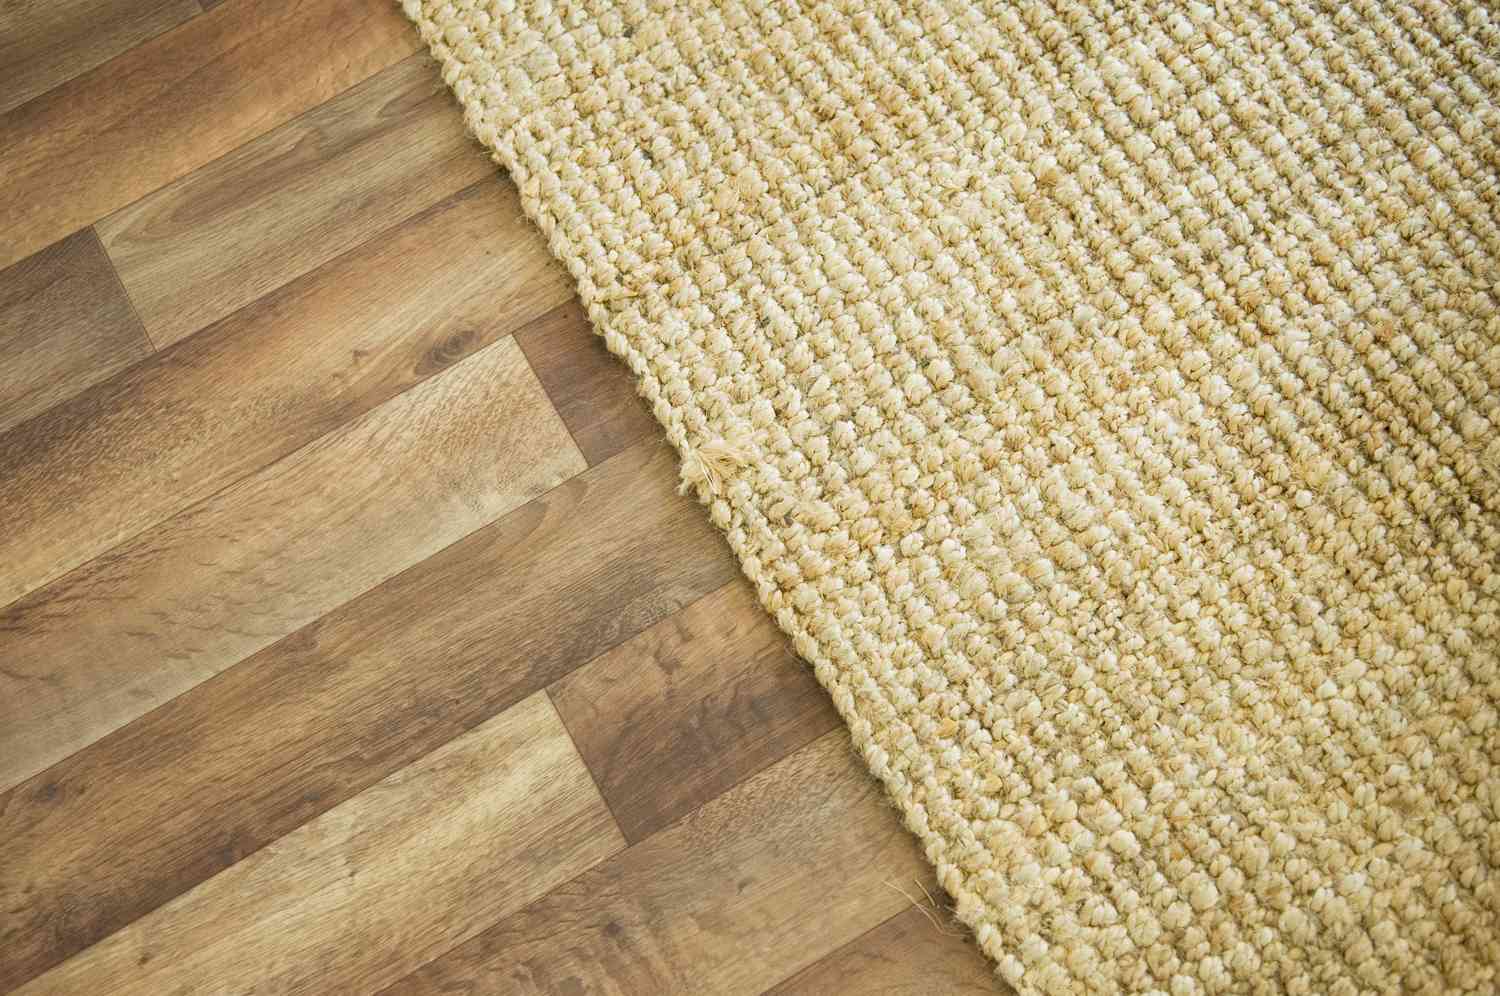 Holzboden und Teppich